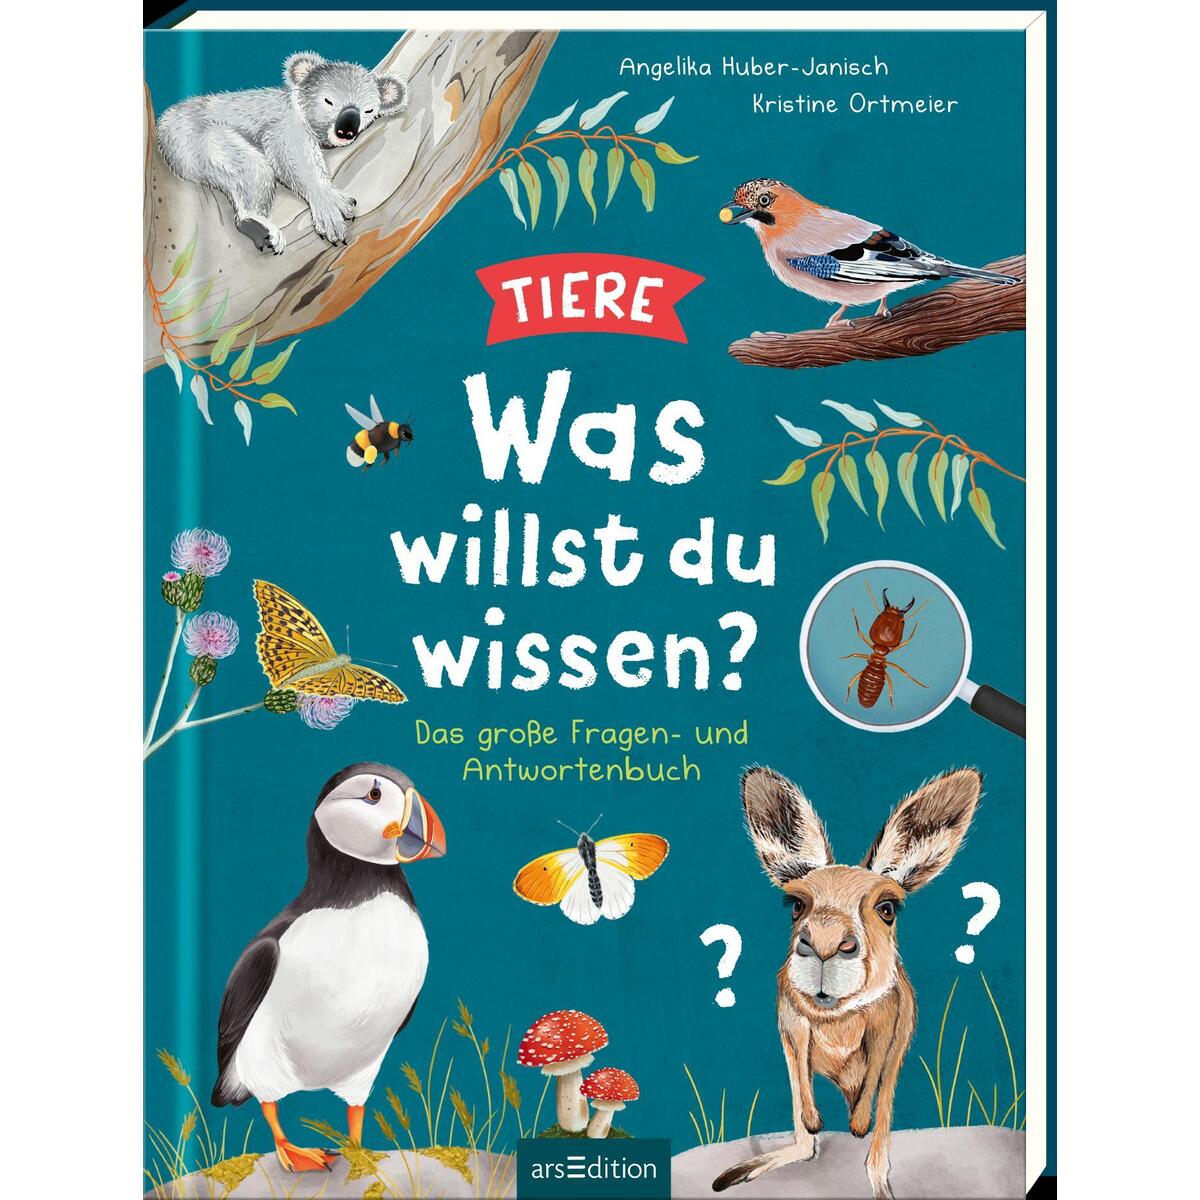 Was willst du wissen? Das große Fragen- und Antwortenbuch - Tiere von Ars Edition GmbH